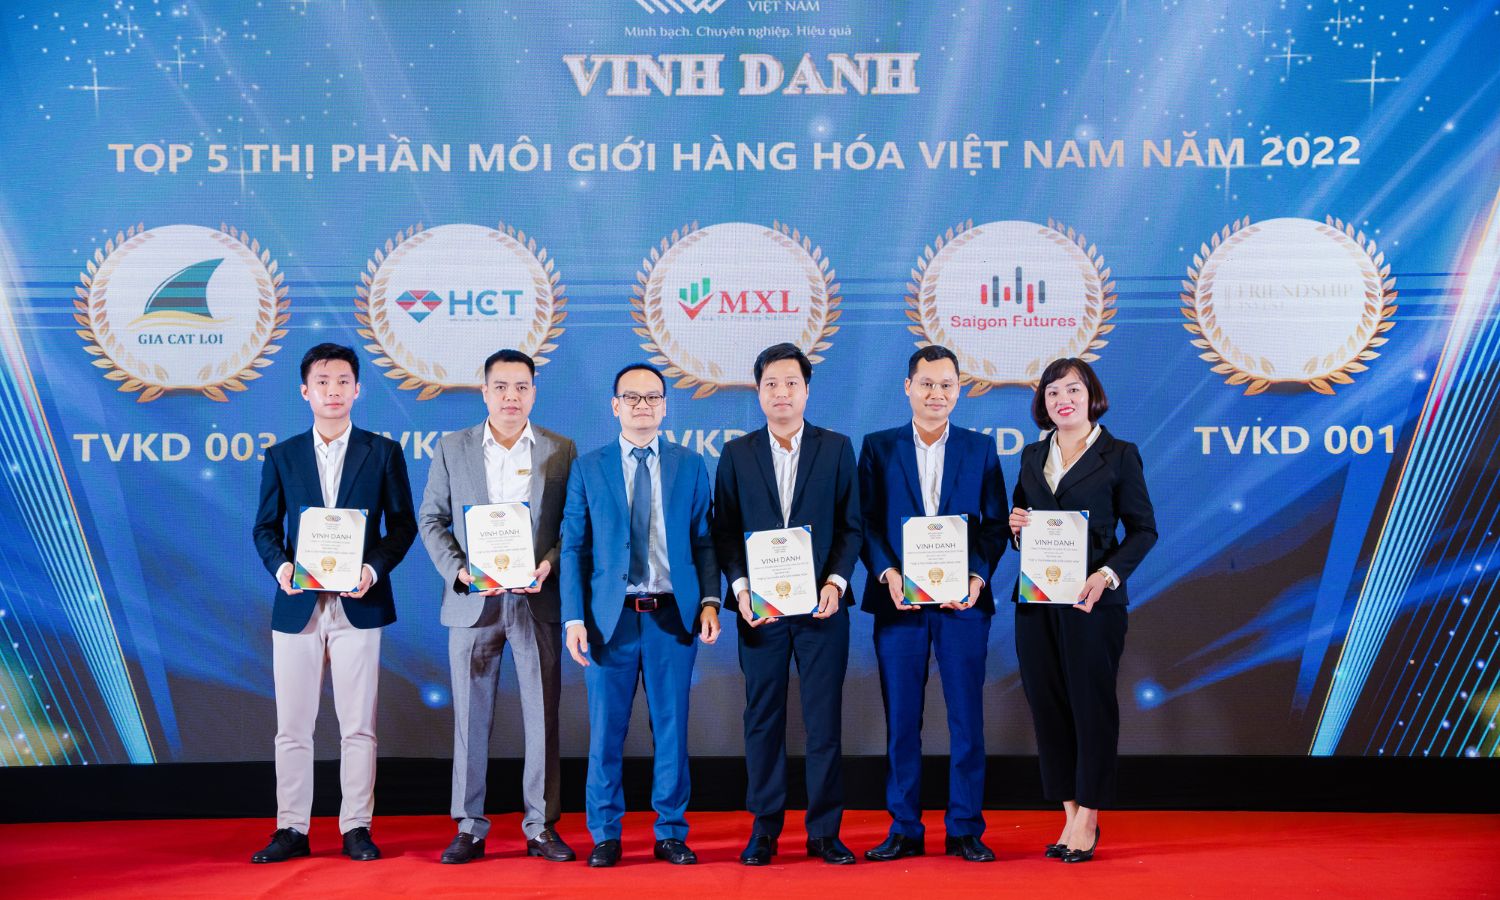 Chủ tịch HĐQT - Ông Nguyễn Quốc Thịnh chụp ảnh cùng đại diện Sở Giao dịch Hàng hóa Việt Nam cùng với các thành viên kinh doanh